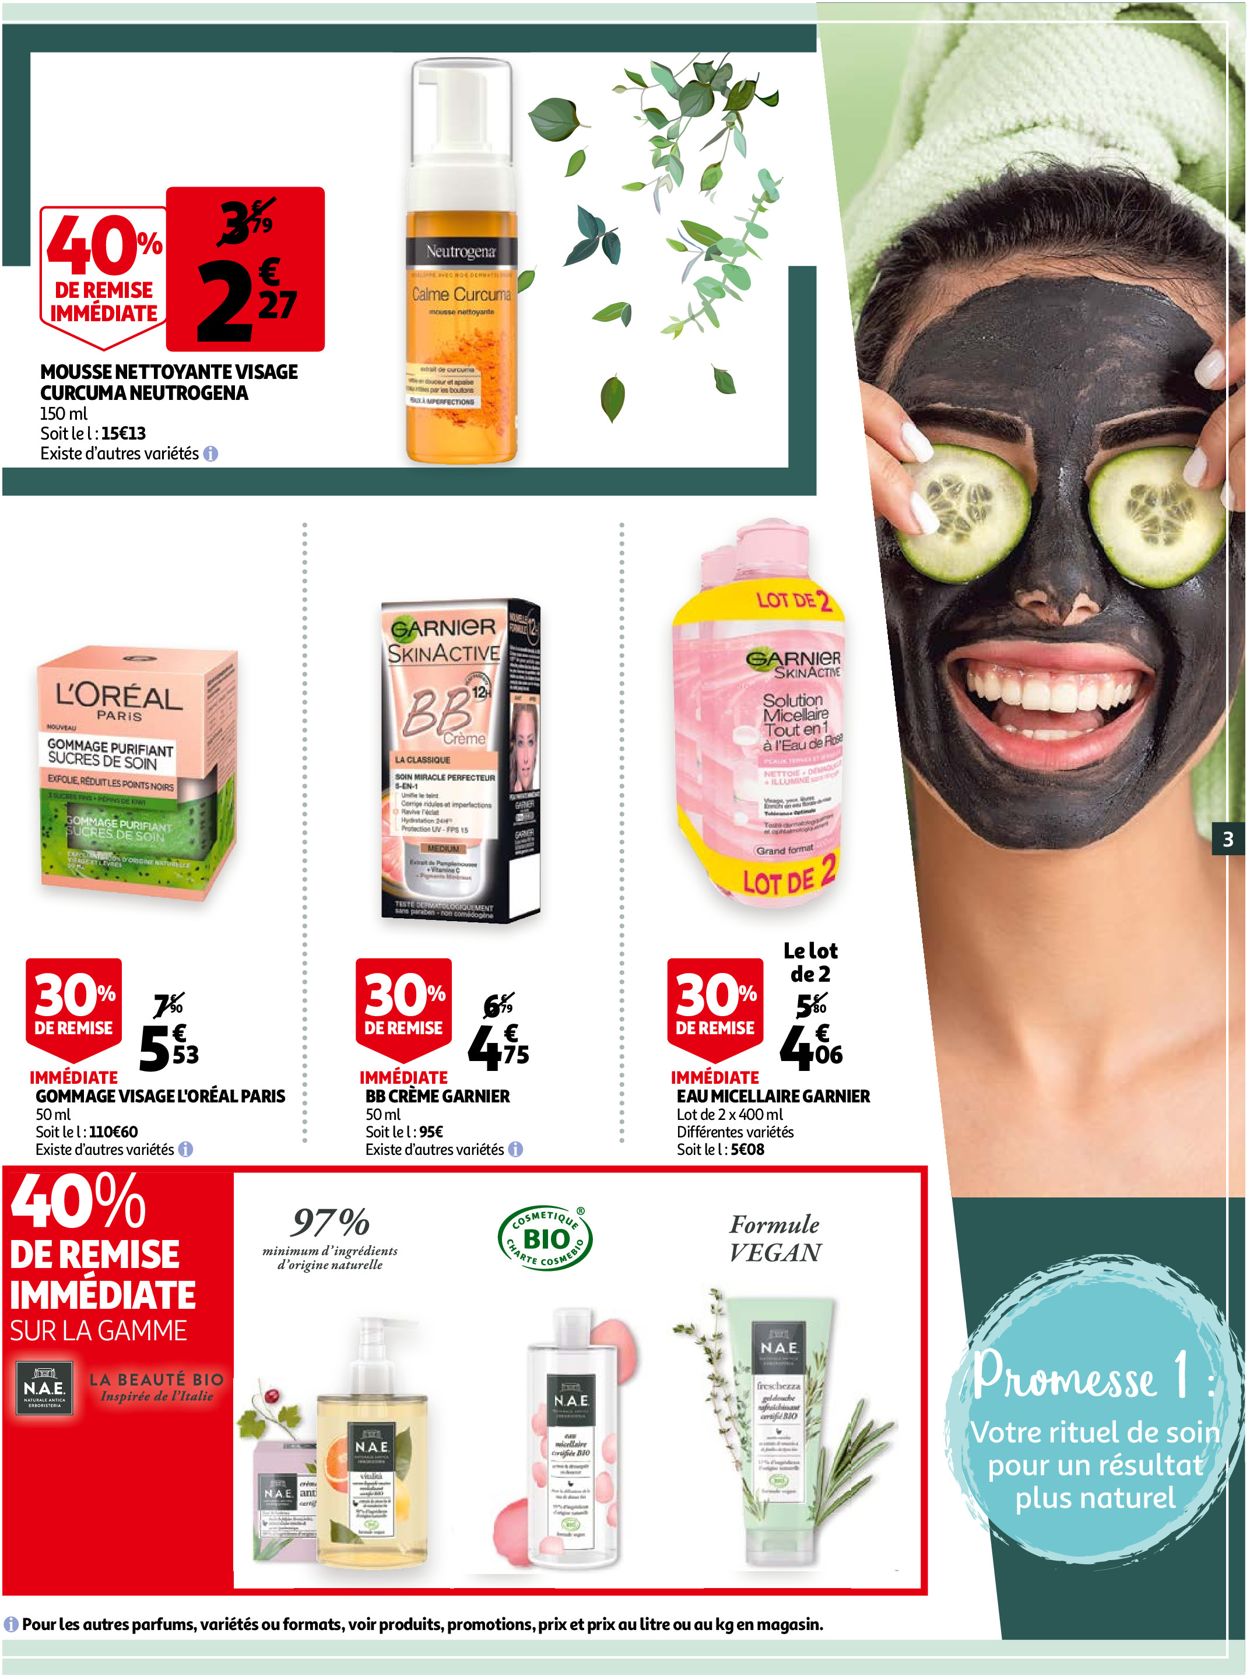 Auchan Special Soin et Detox 2021 Catalogue - 13.01-26.01.2021 (Page 3)